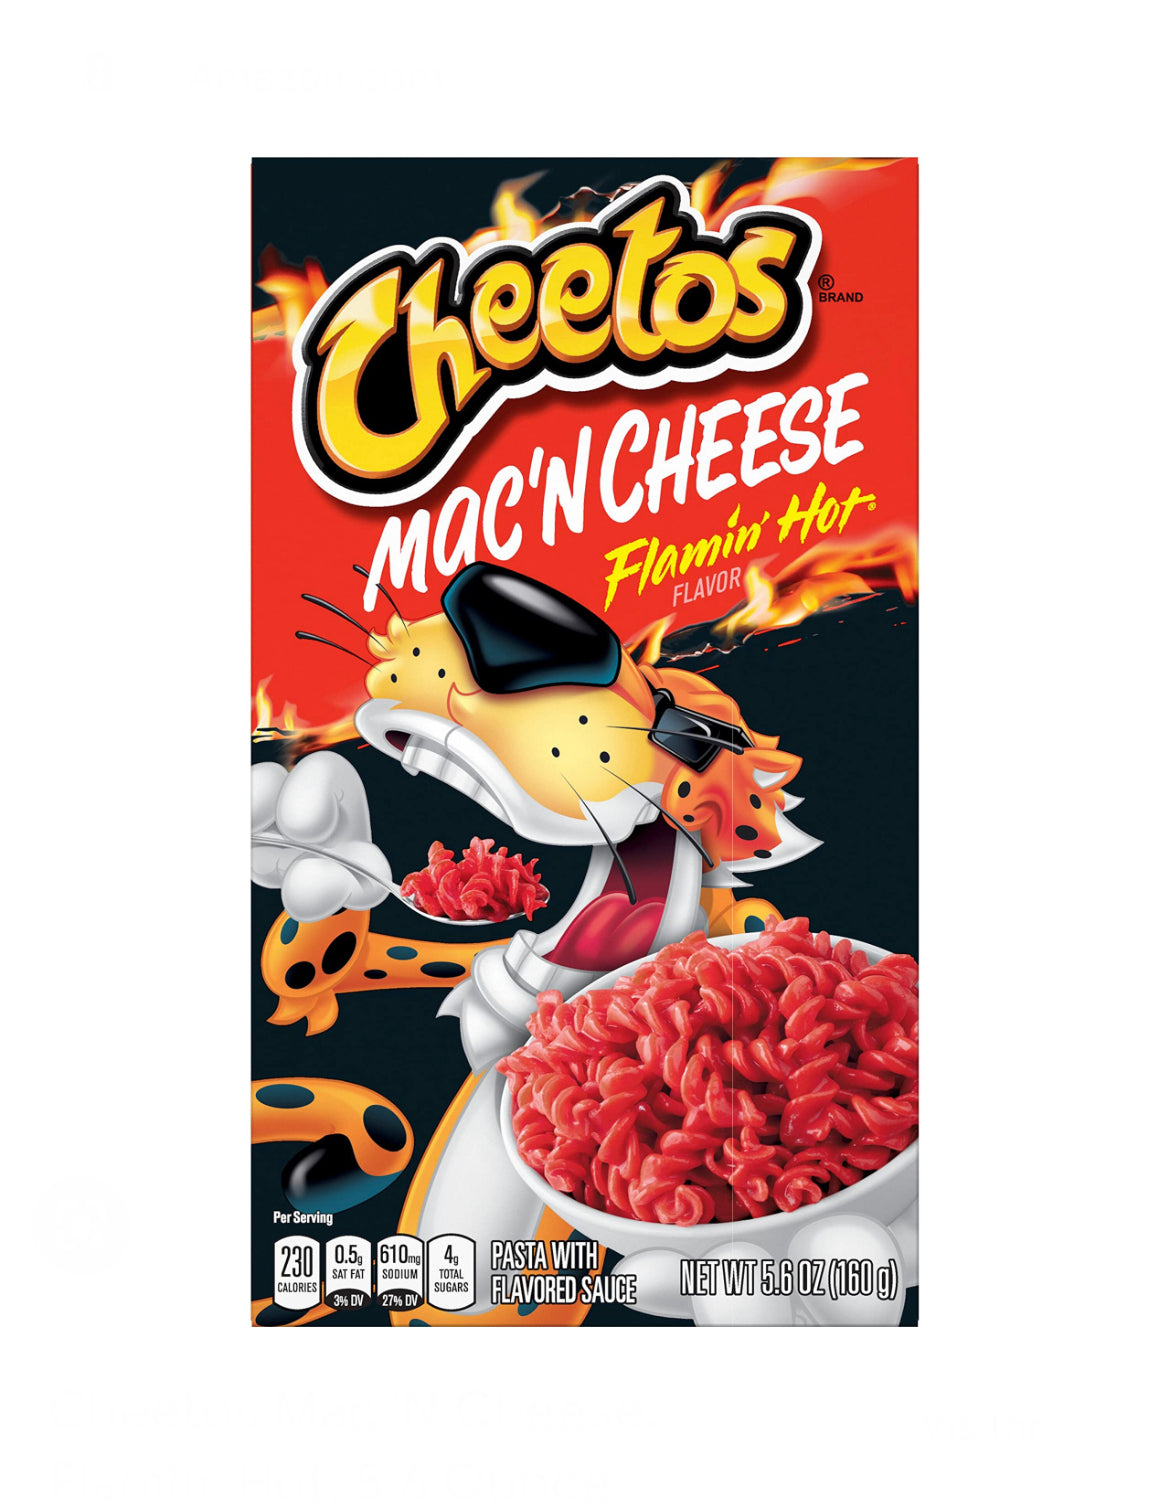 Cheetos mac'n cheese